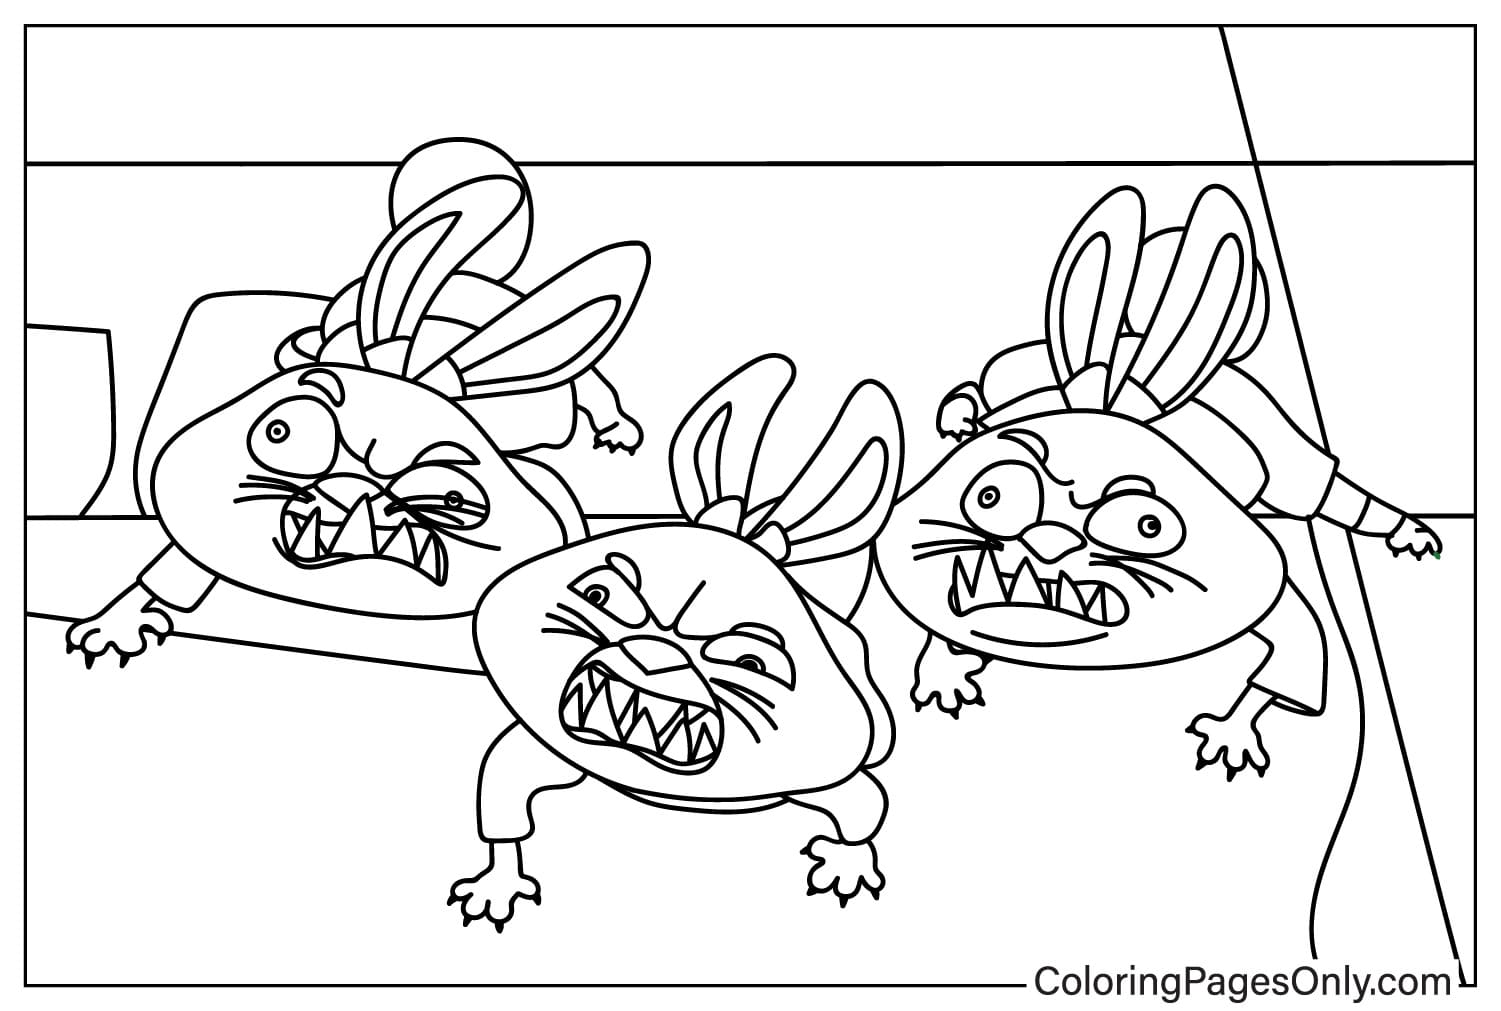 Раскраска Трио буйных кроликов из мультфильма «Кунг-фу Панда»